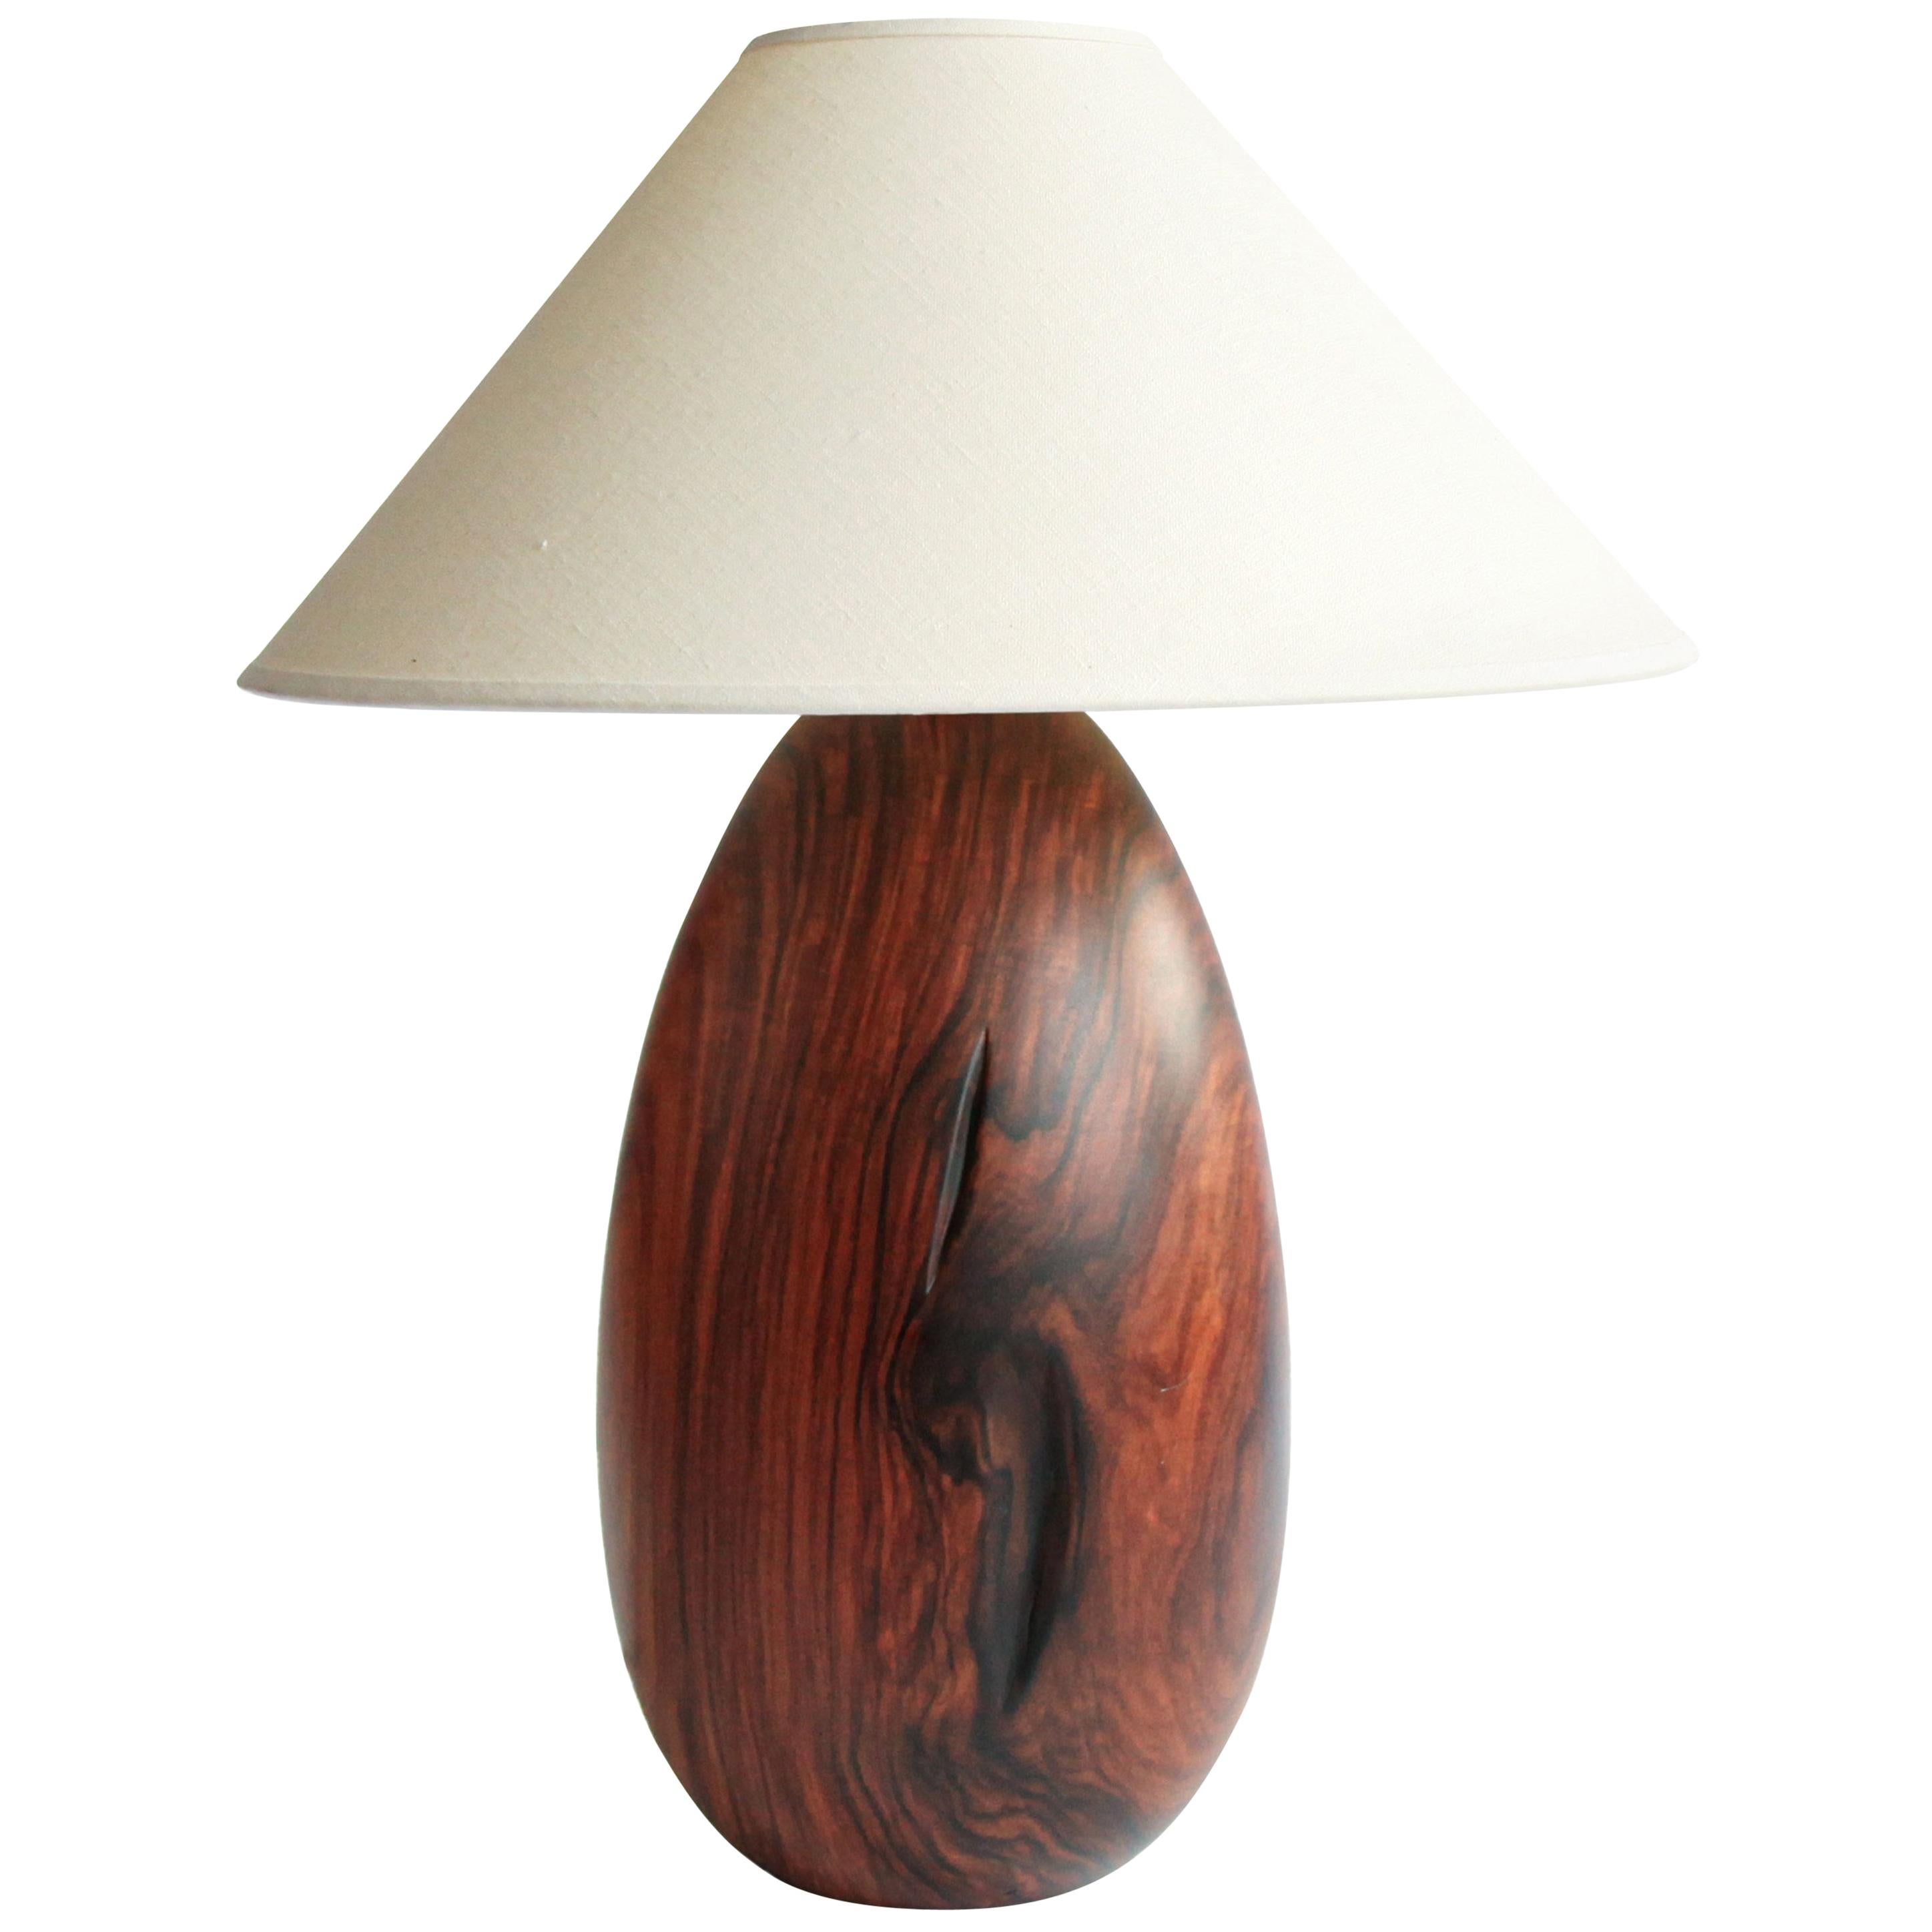 Lampe aus bolivianischem Palisanderholz mit weißem Leinenschirm, groß, Kollektion Árbol, 33 + 24